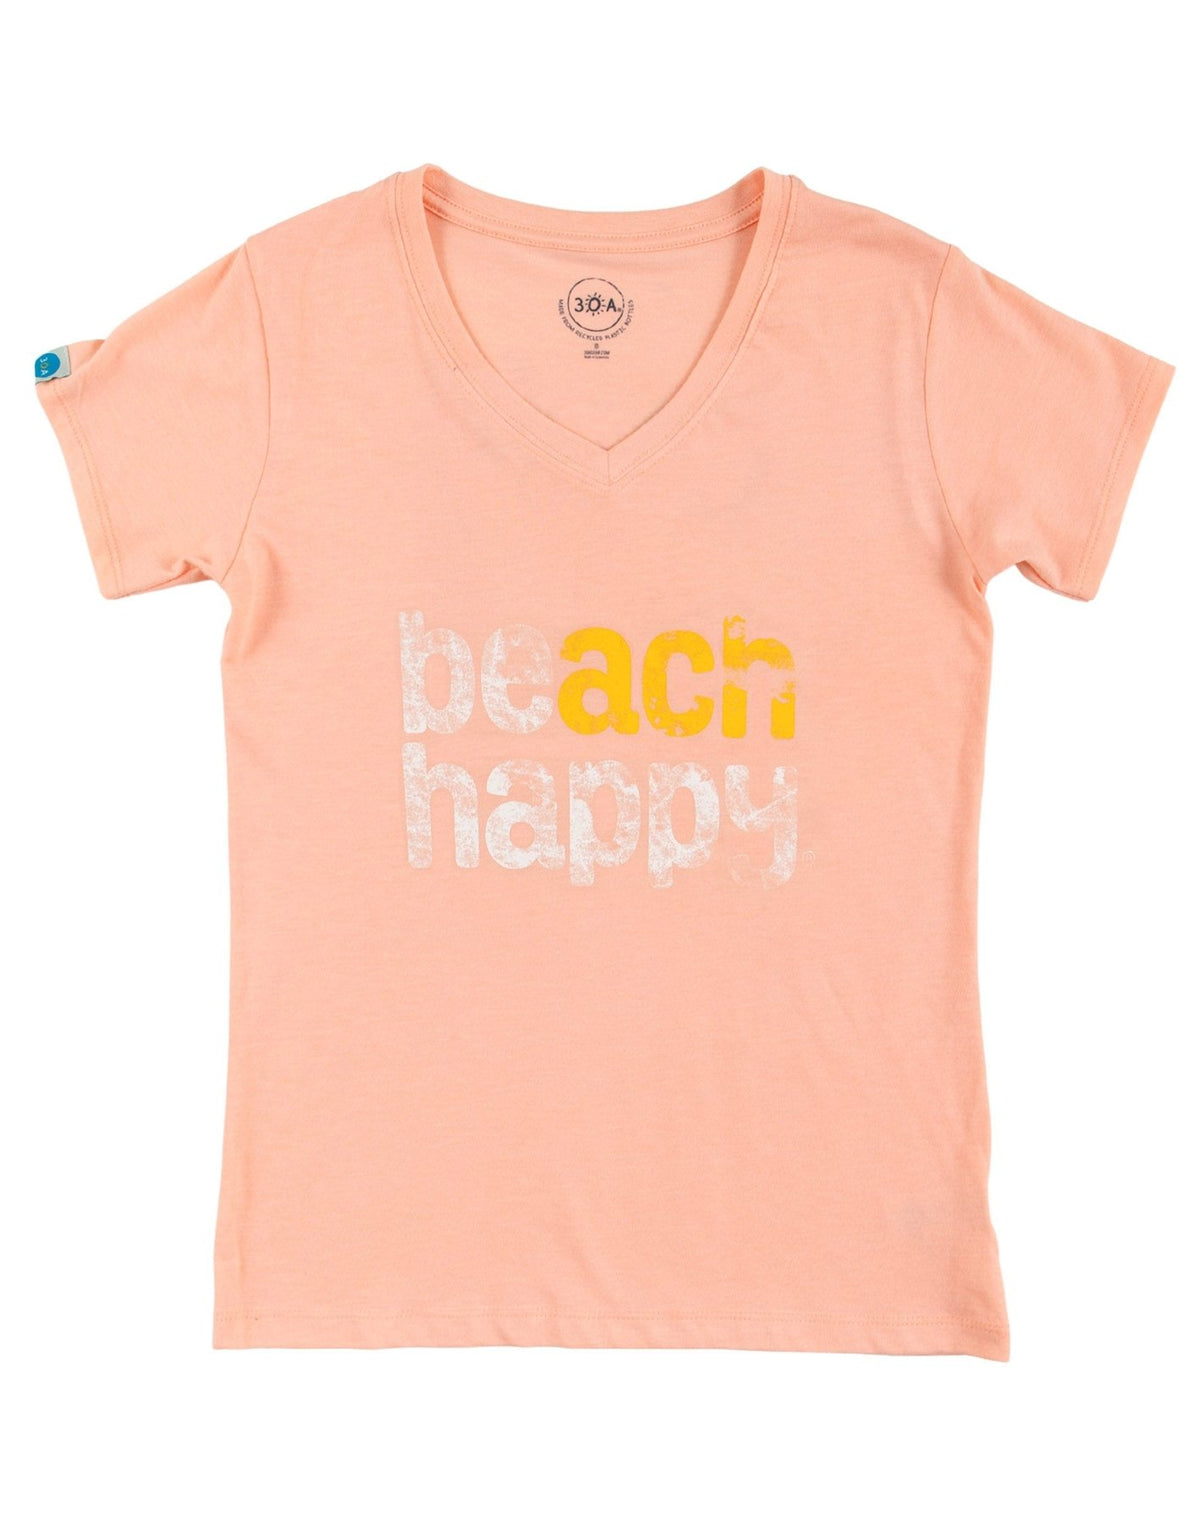 Beach Happy V - neck T - Shirt - 30A Gear - women tee